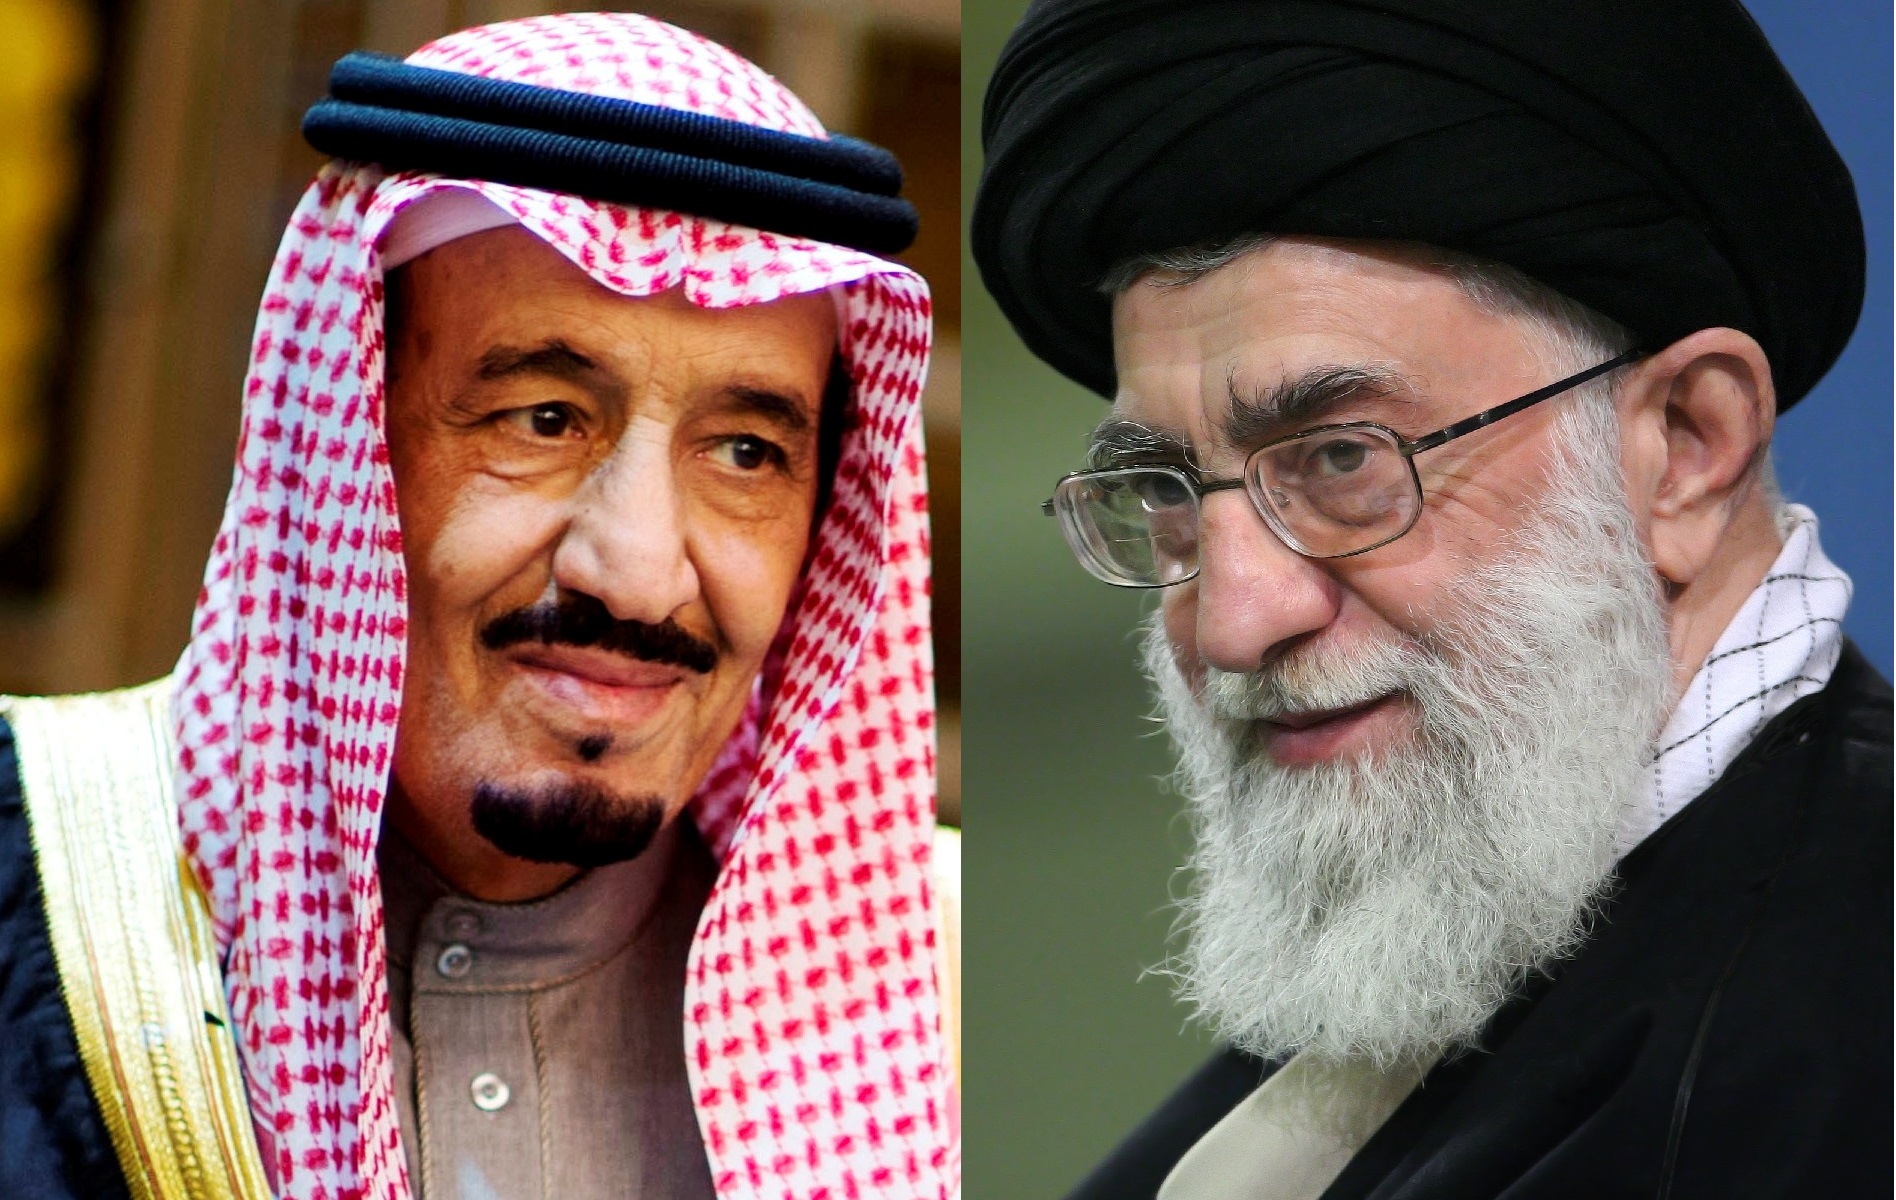 À gauche, le roi d'Arabie saoudite Salmane ben Abdelaziz Al Saoud. À droite, l'ayatollah Ali Khamenei, guide suprême de la révolution islamique iranienne. Crédits Secretary of Defense (g), seyyed shabodin vajedi (CC BY 4.0) (d)